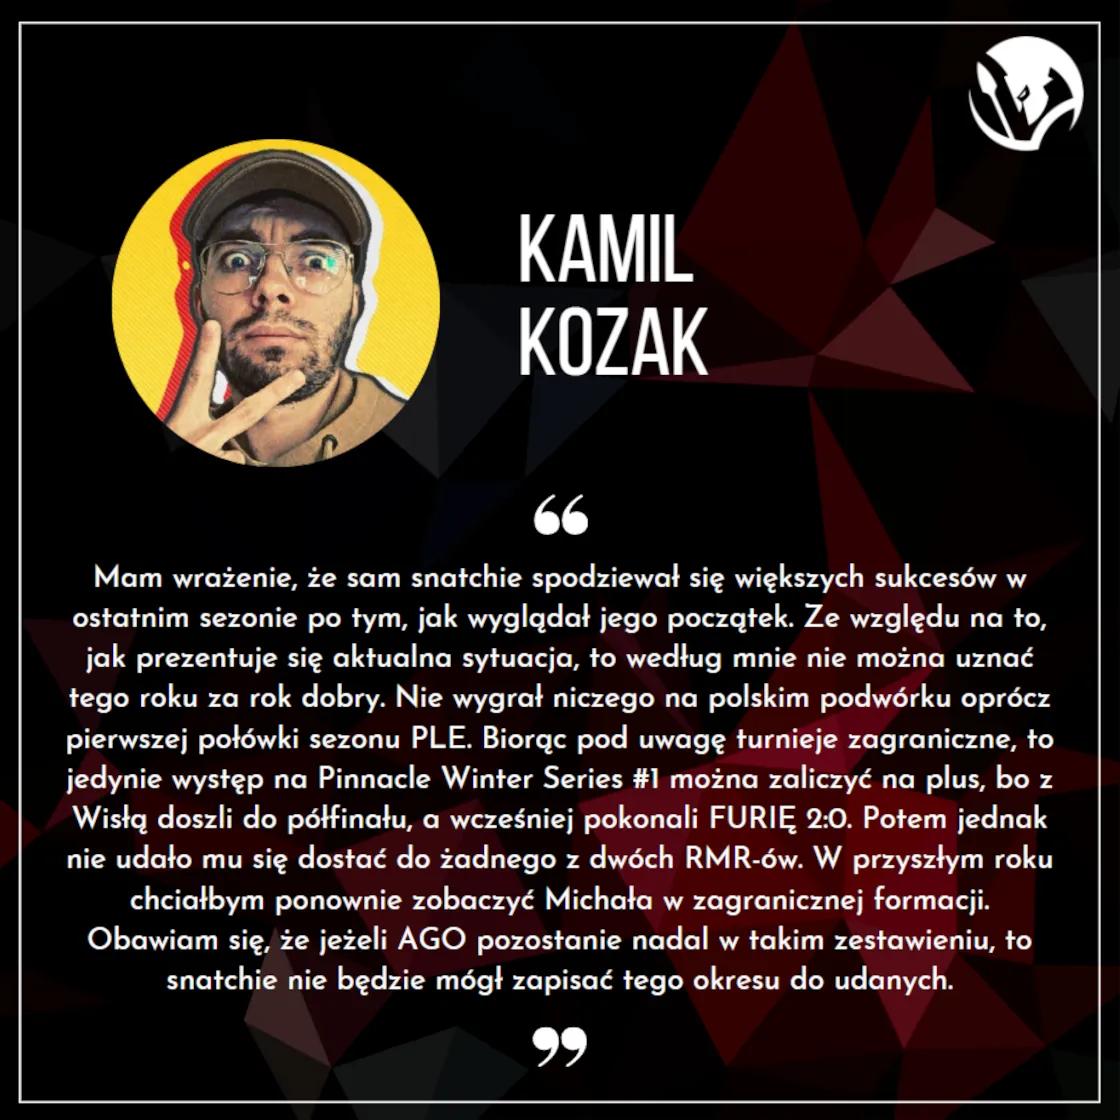 Kamil Kozak